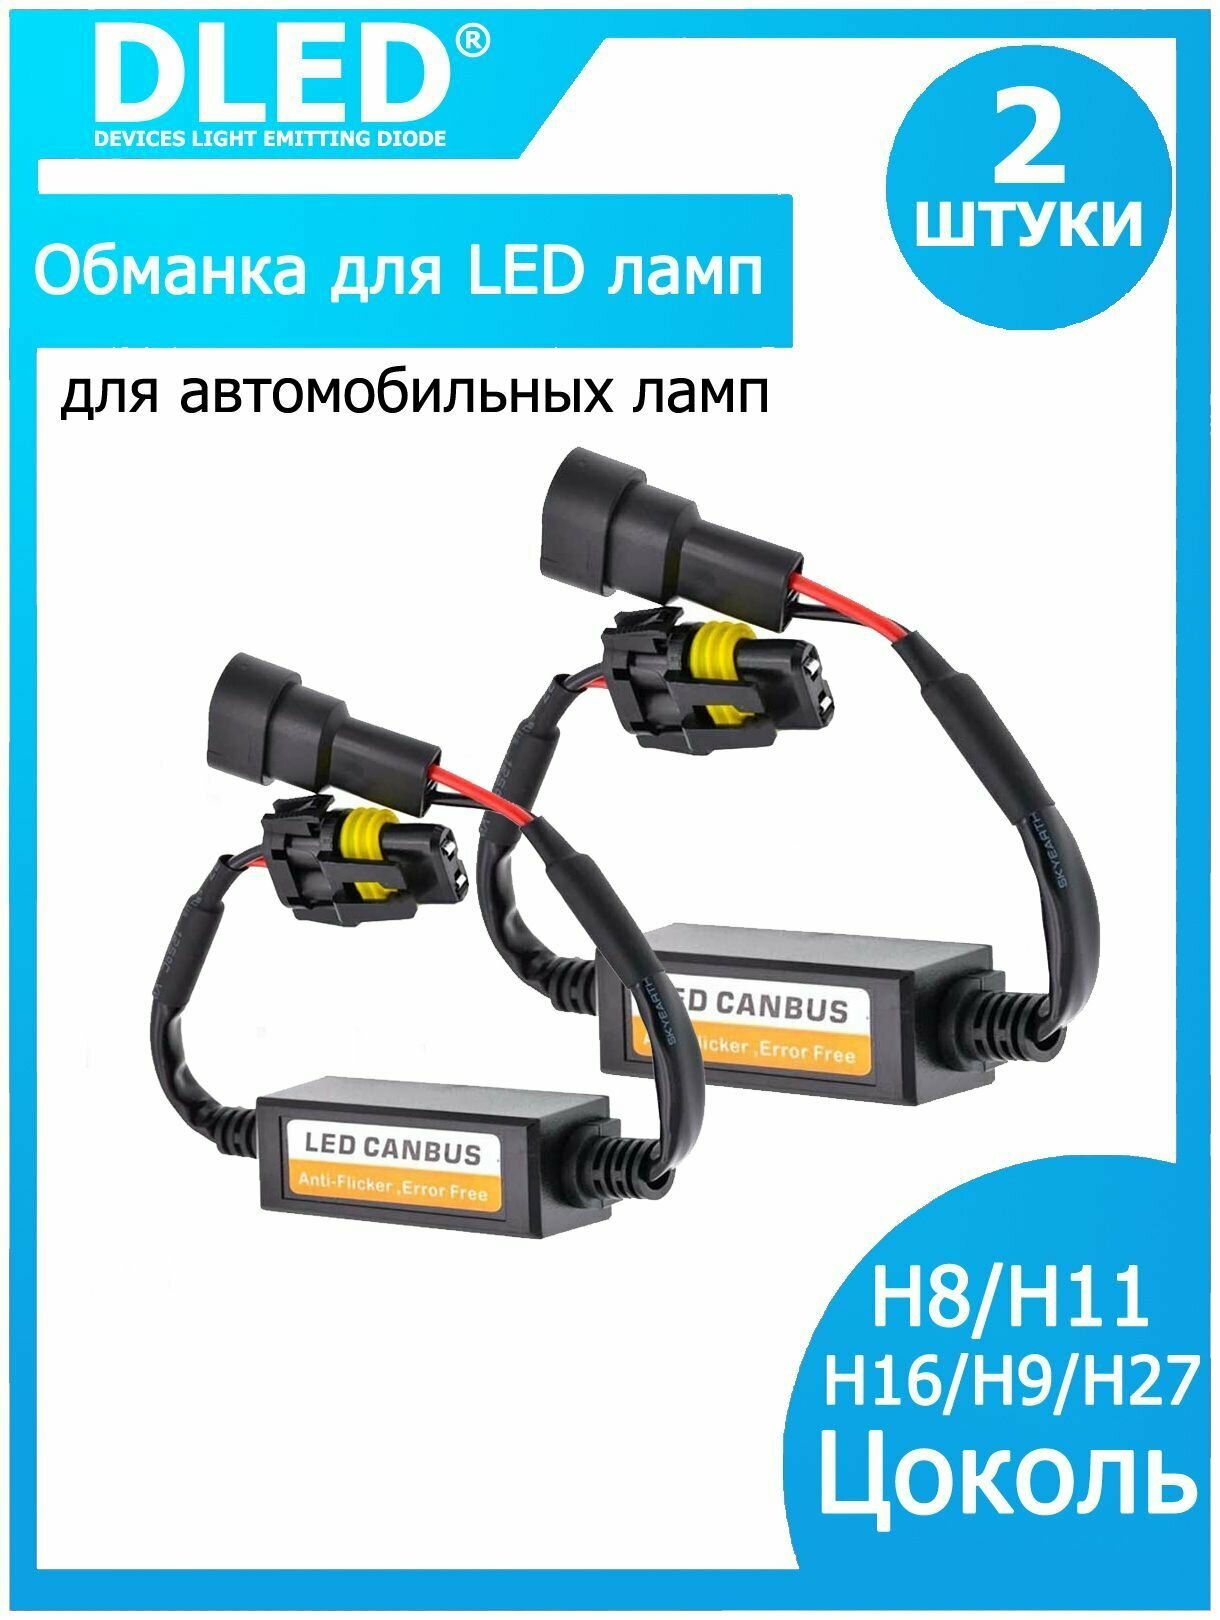 Обманка DLED для автомобильных ламп H8/H11/H16/H9/H27 (2шт)